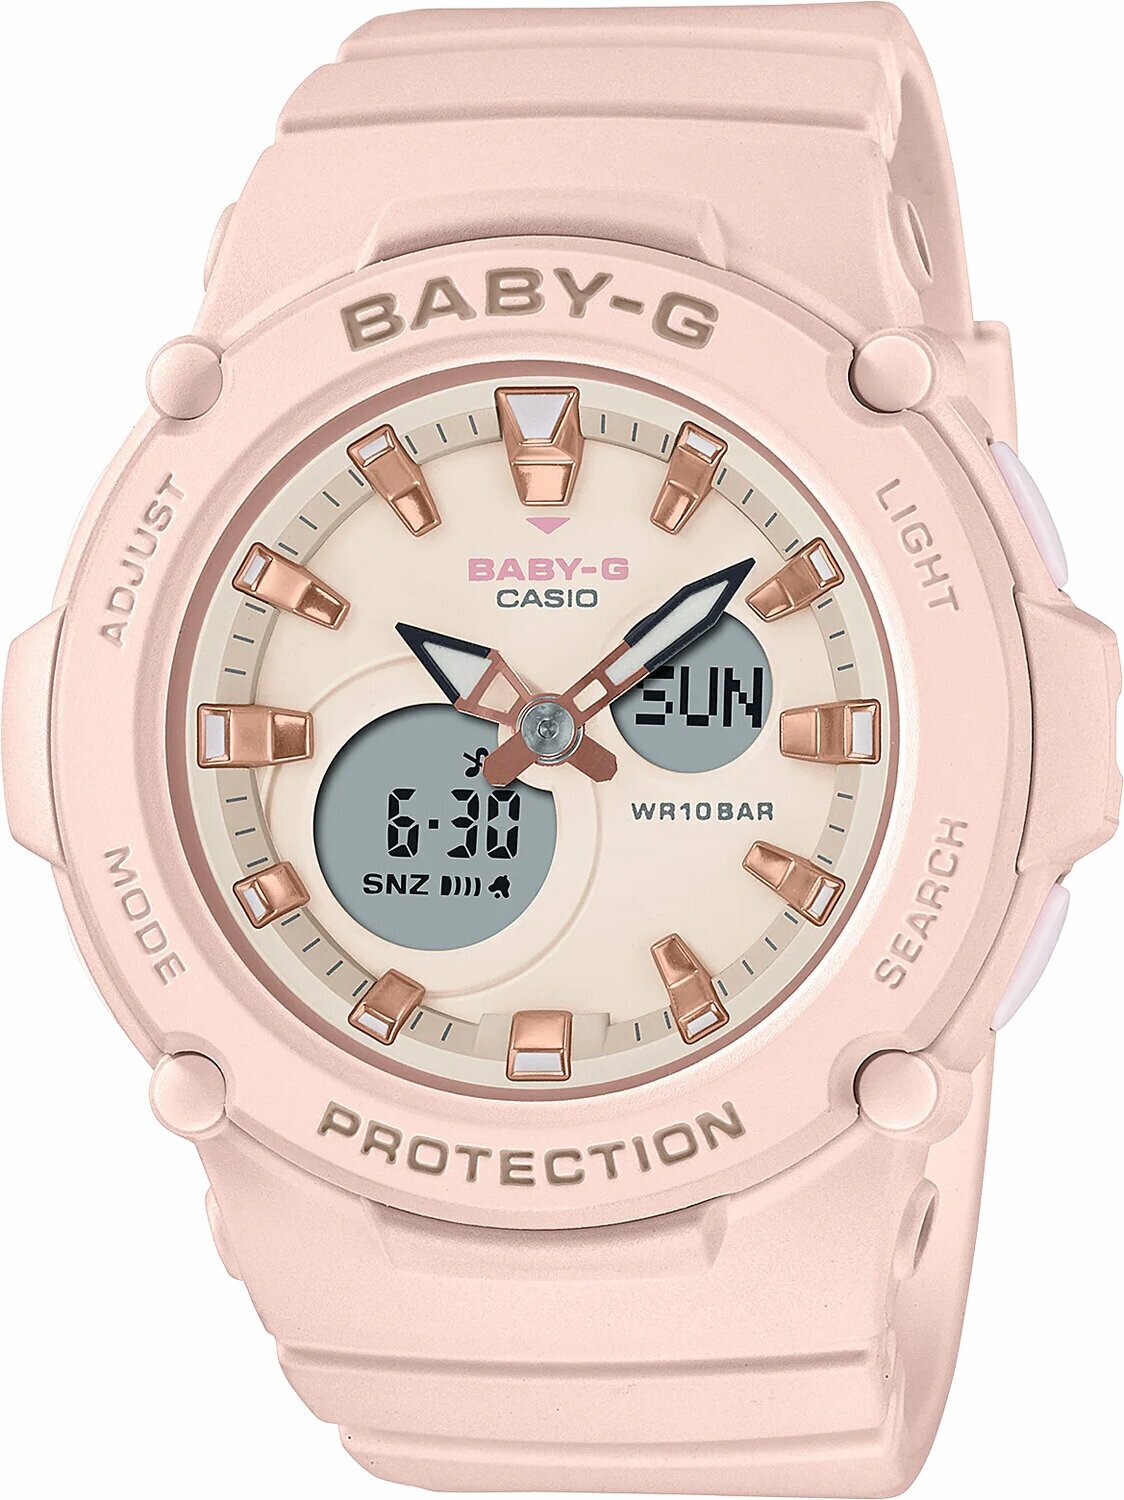 Часы наручные женские спортивные Casio Baby-G BGA-275-4A Японские оригинальные часы с гарантией от официального дилера